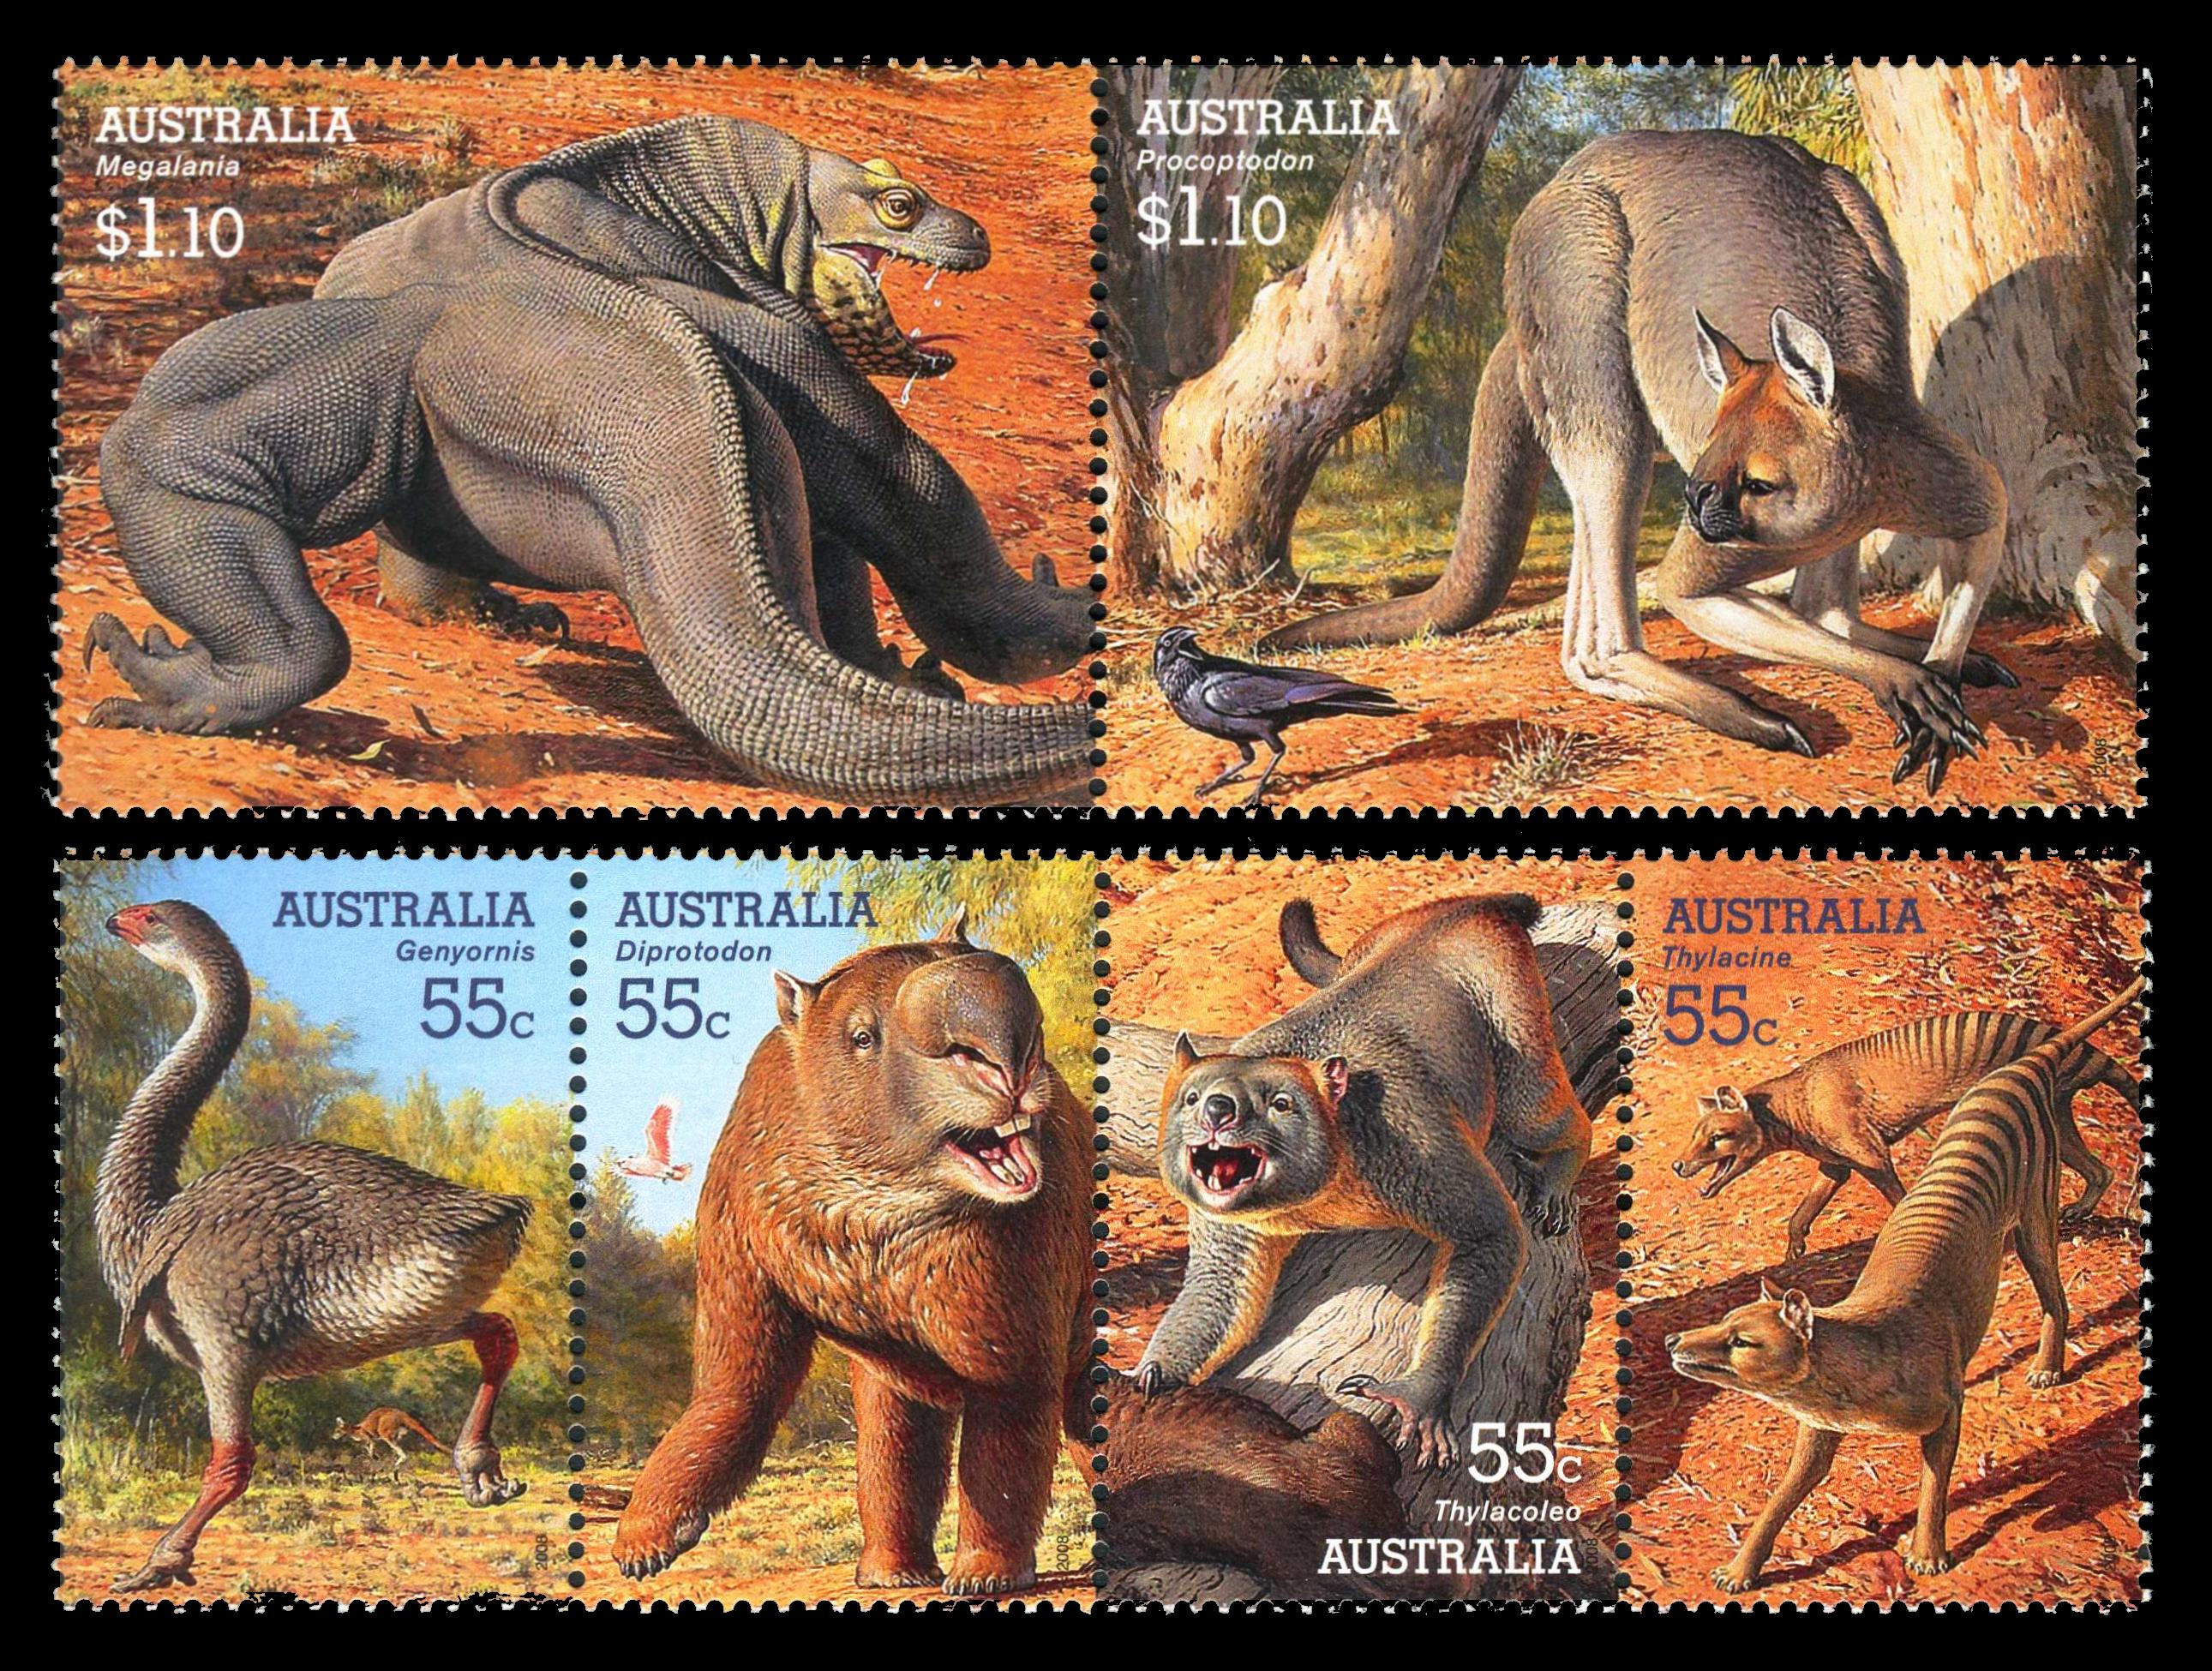 Megafauna on stamps of Australia